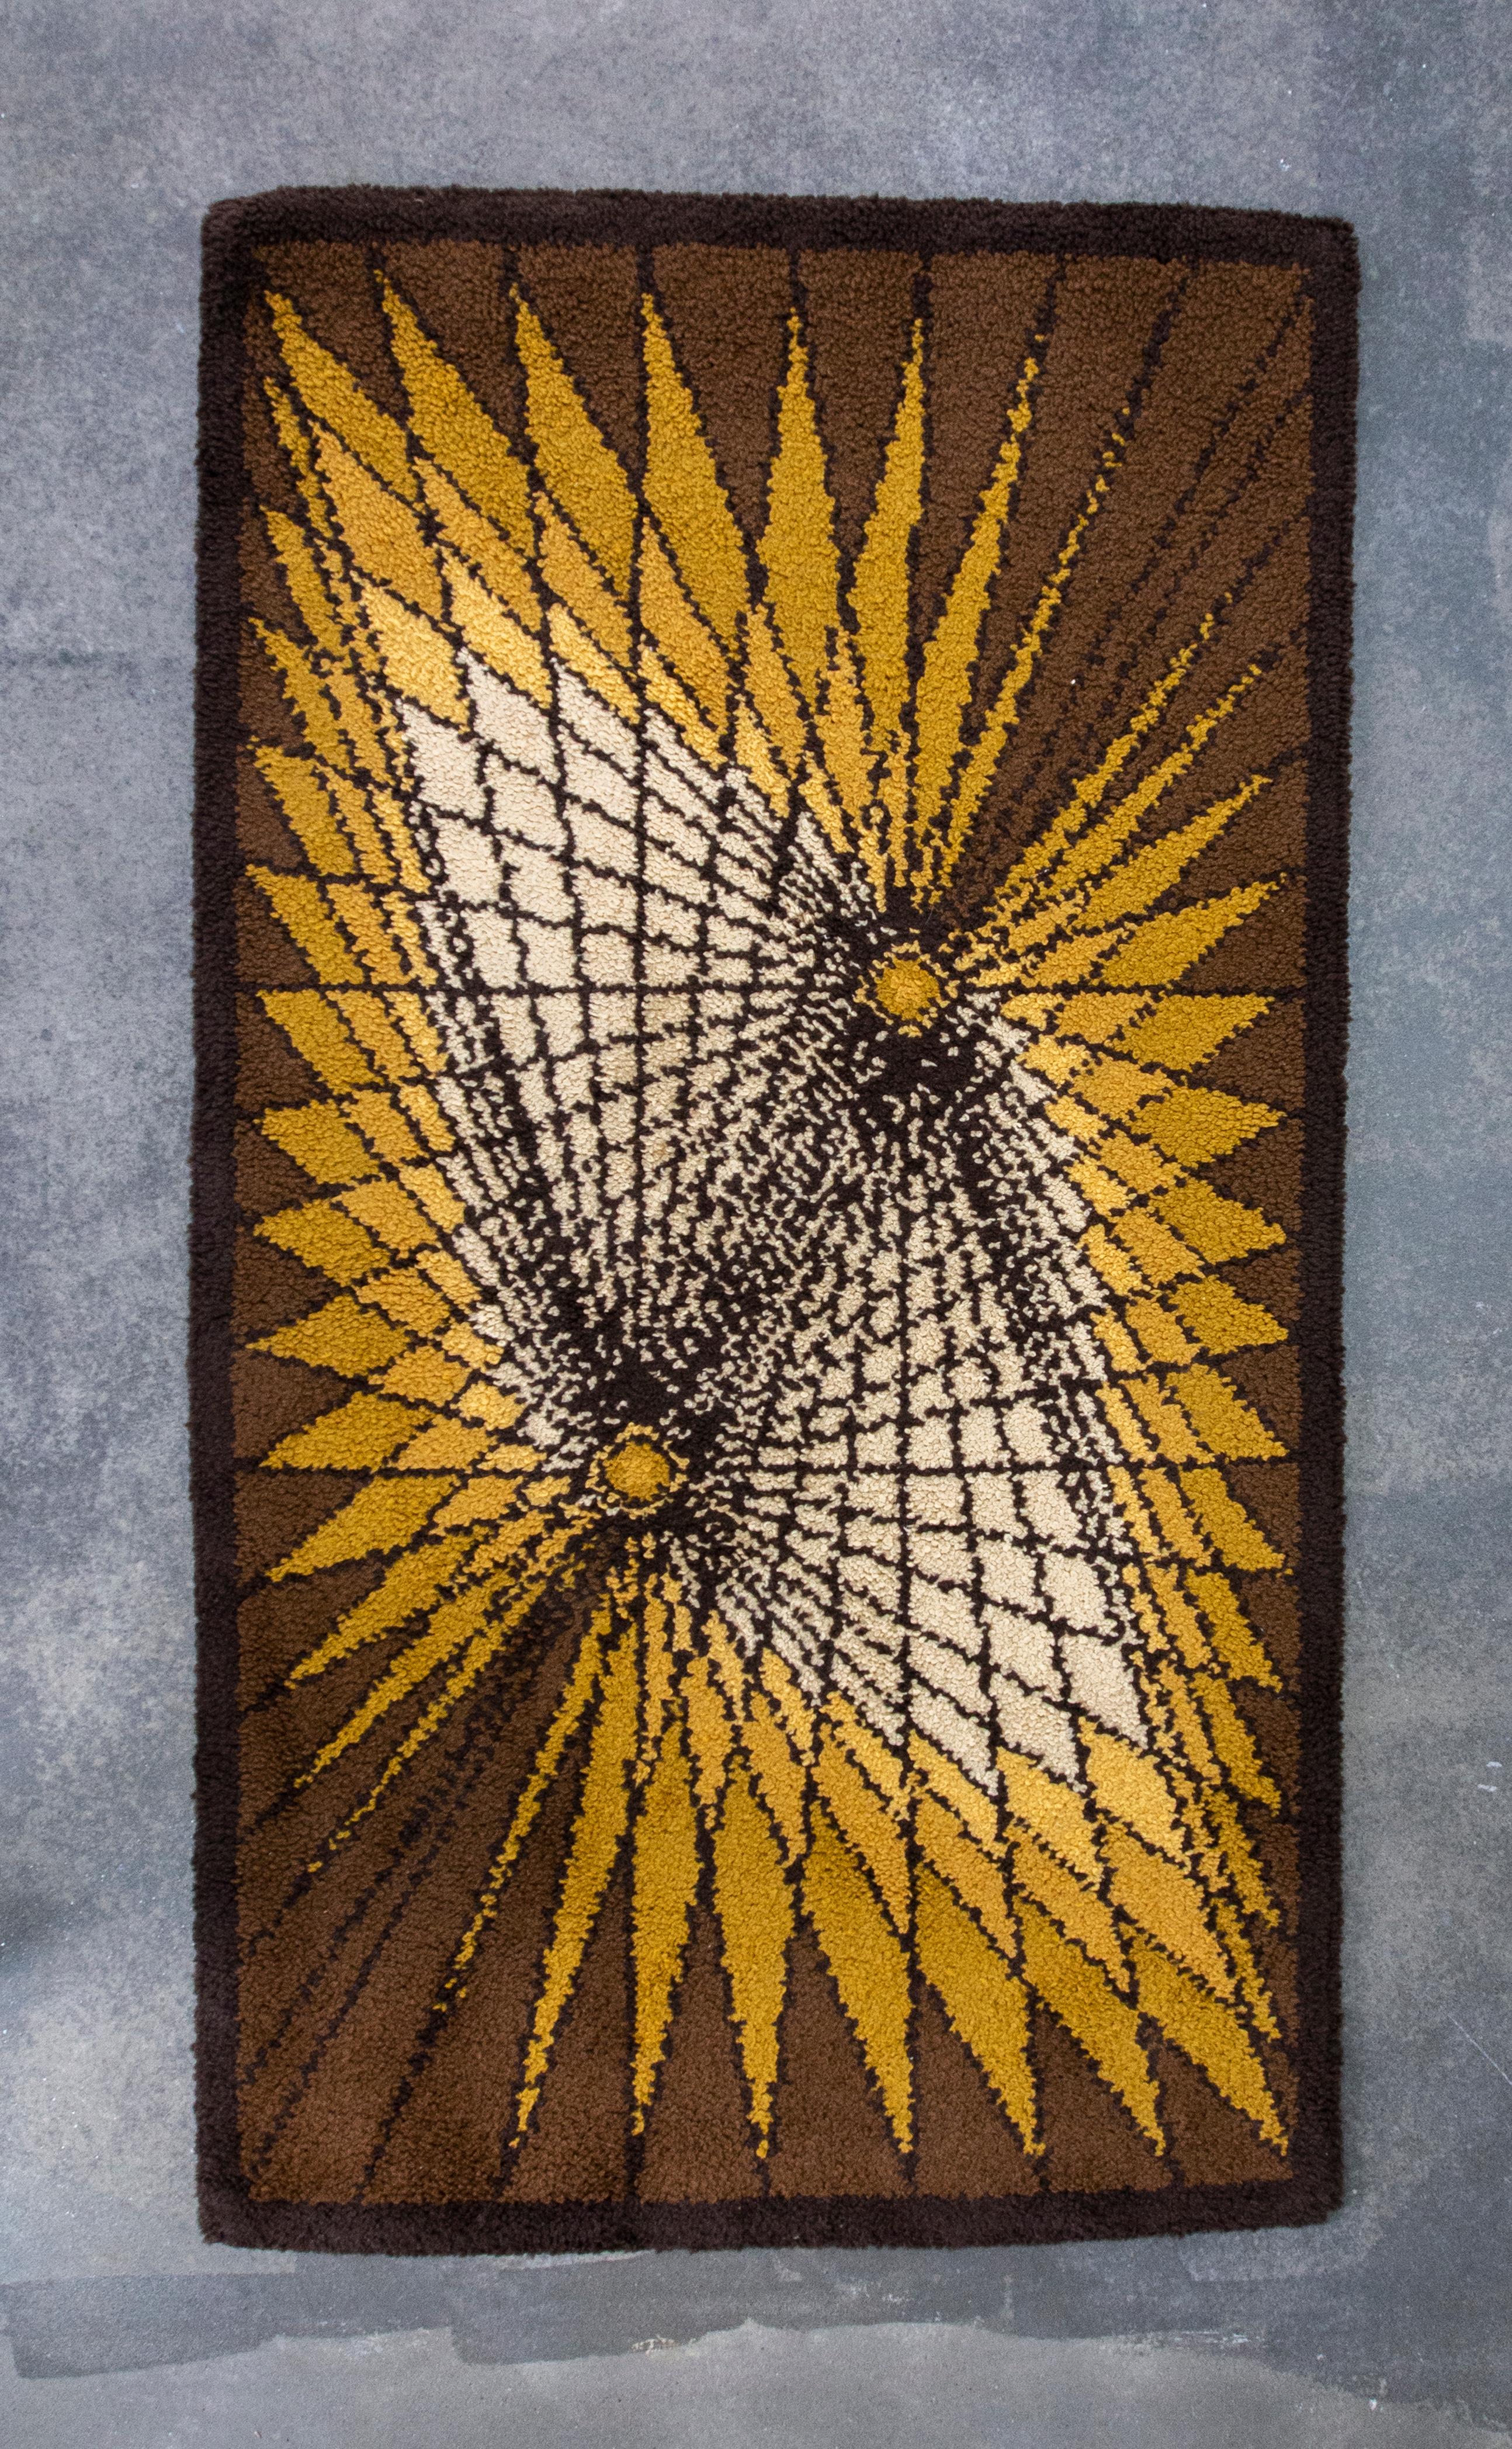 Vintage Small Scandinavian Wool Rya Rug mit geometrischen Mustern in Gelb, Braun und Off-White. Dieser außergewöhnlich dekorative Teppich ist ein perfektes Beispiel für das Teppichdesign der 1970er Jahre in Nordeuropa. Der Teppich ist in einem sehr